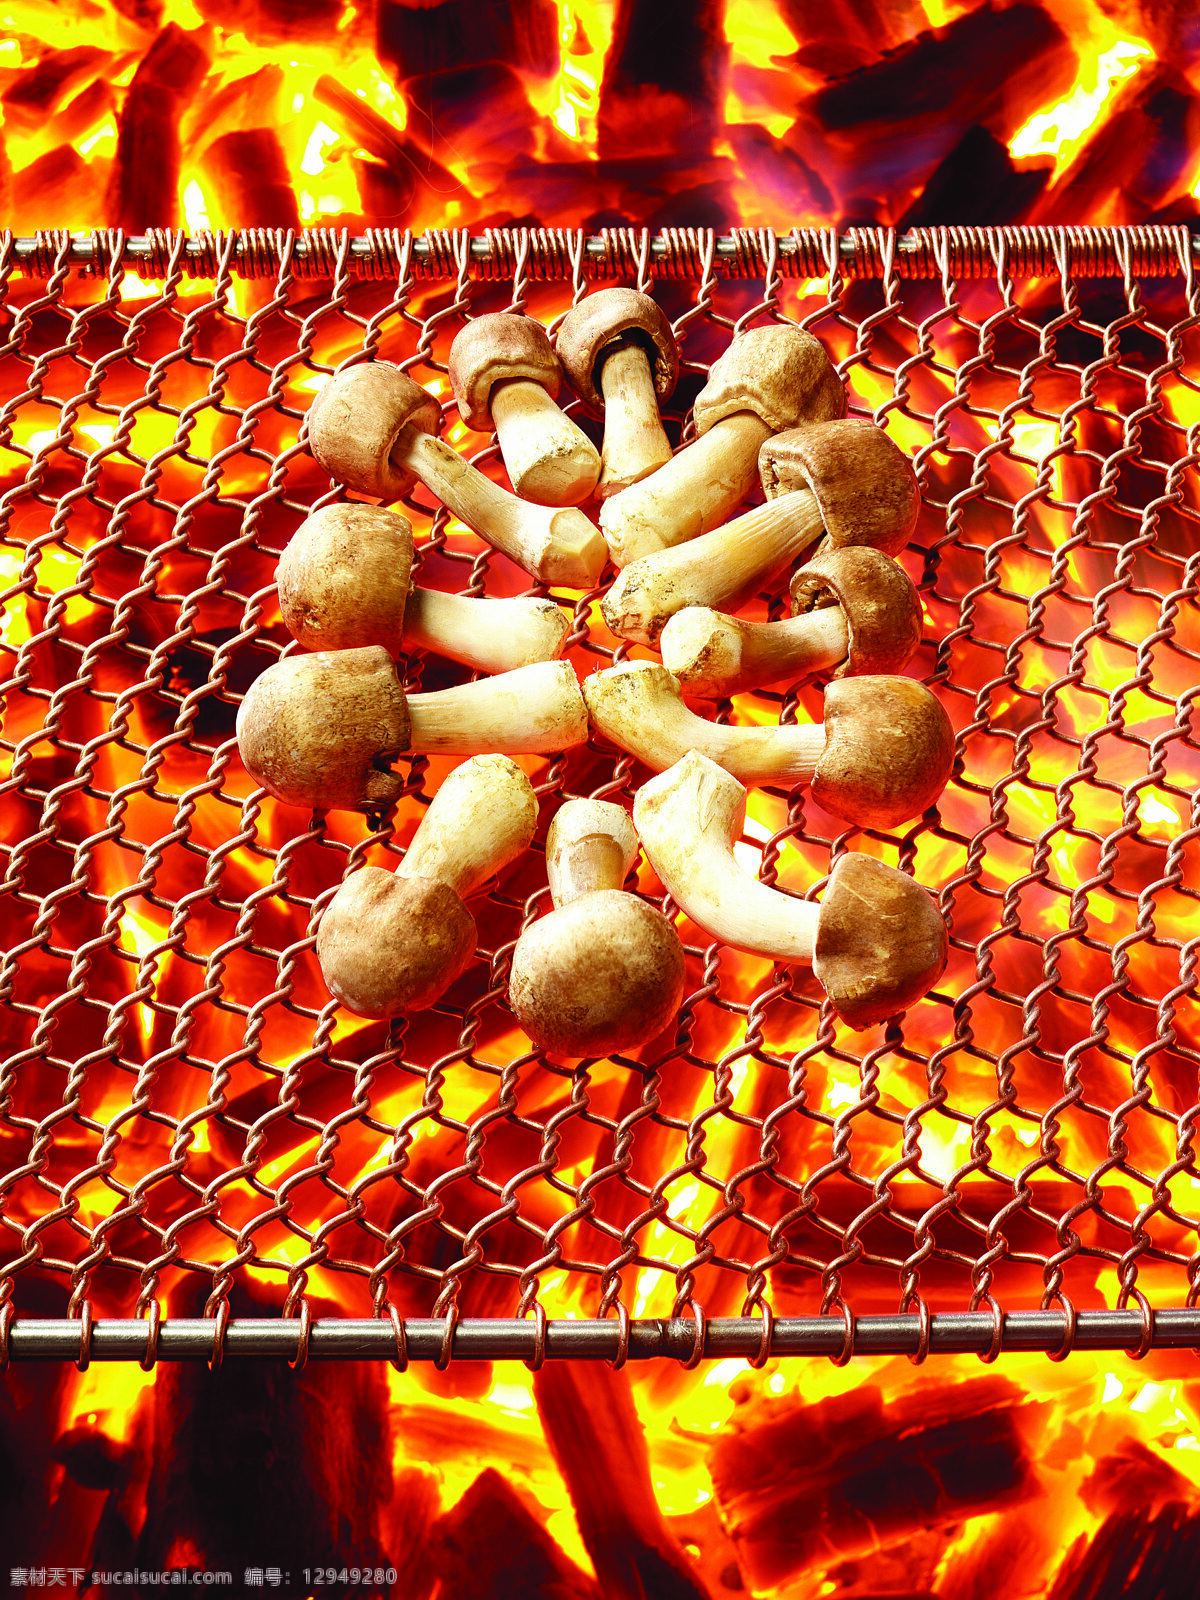 堆 正在 烧烤 蘑菇 蔬菜 食物 菌类 新鲜 碳烤 铁网 美味 可口 蘑菇图片 餐饮美食